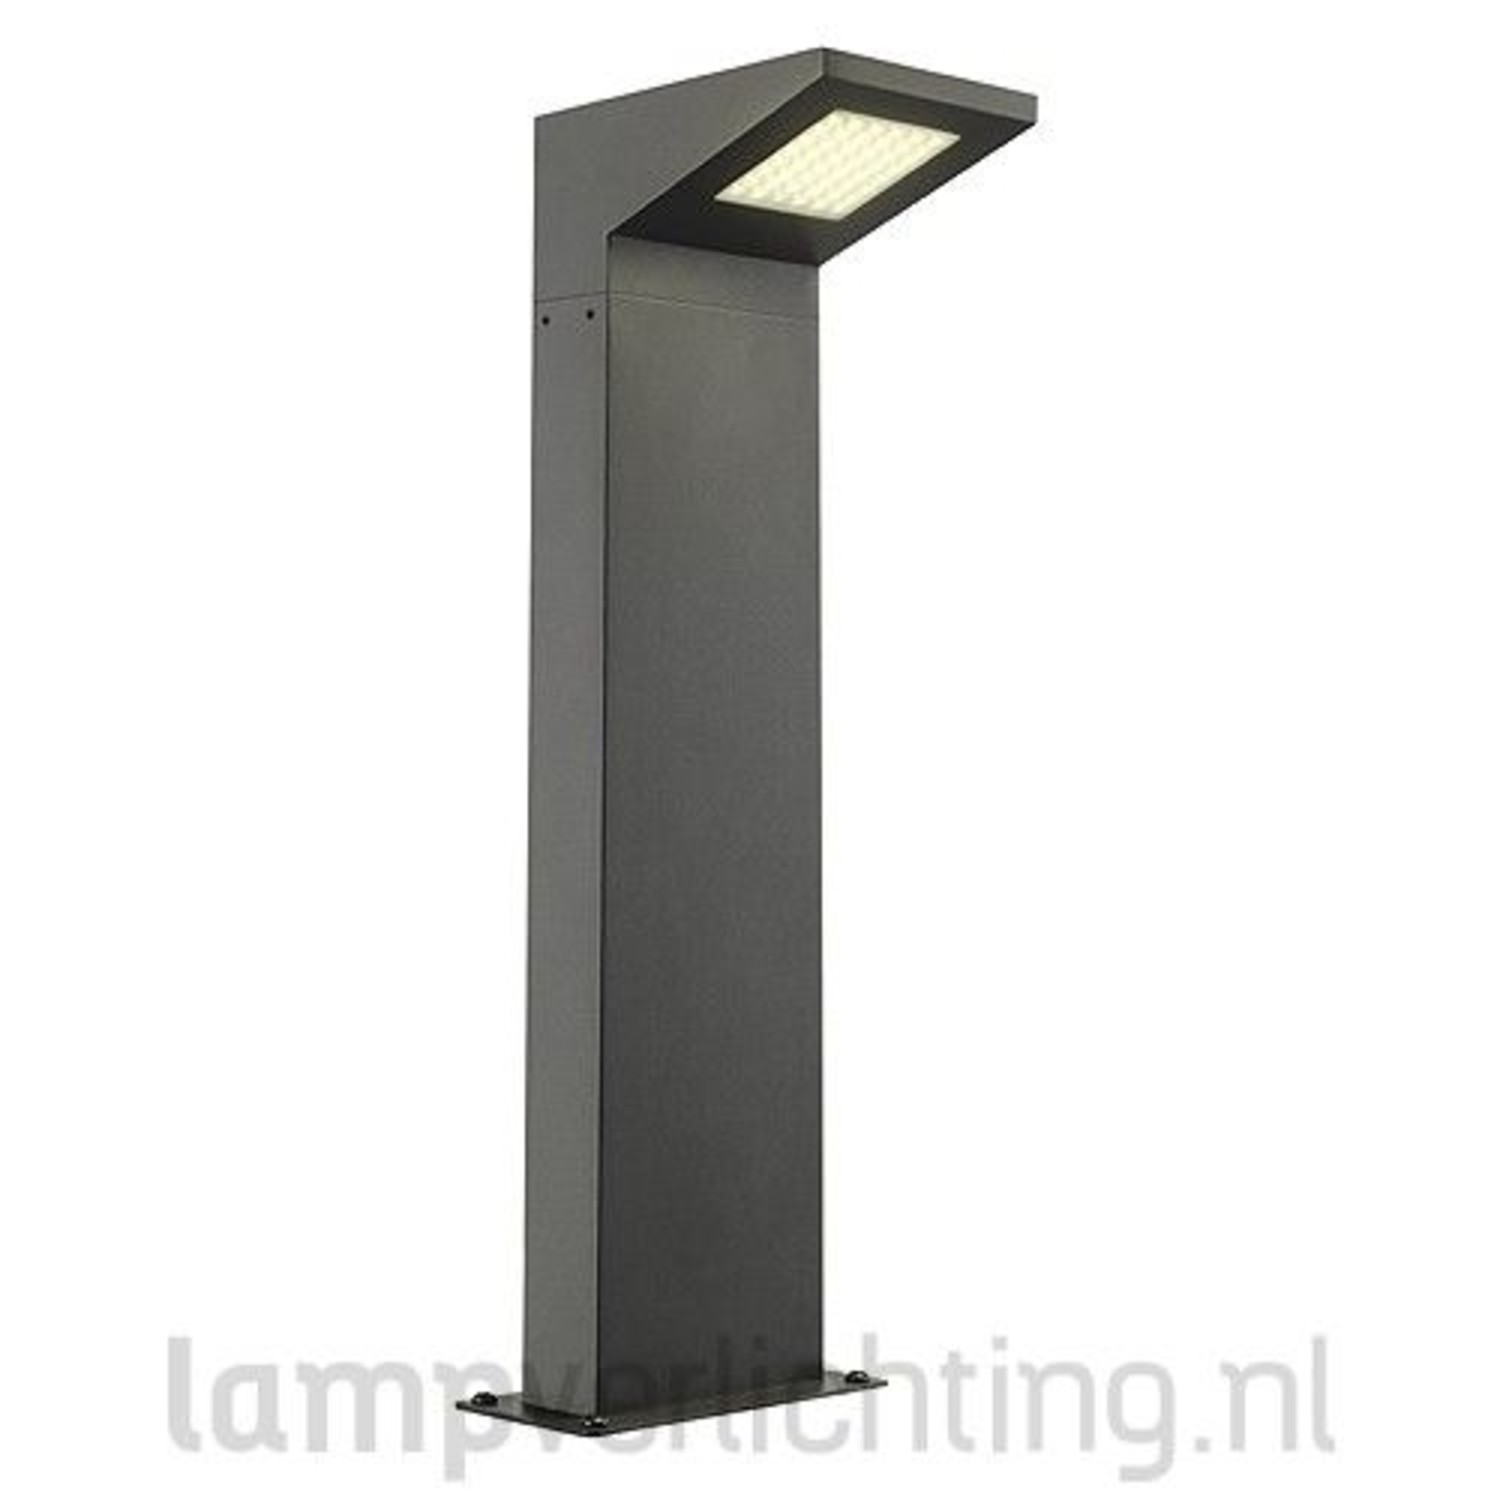 Staande Buitenlamp Padverlichting 50 cm hoog - Antraciet - 230V LampVerlichting.nl